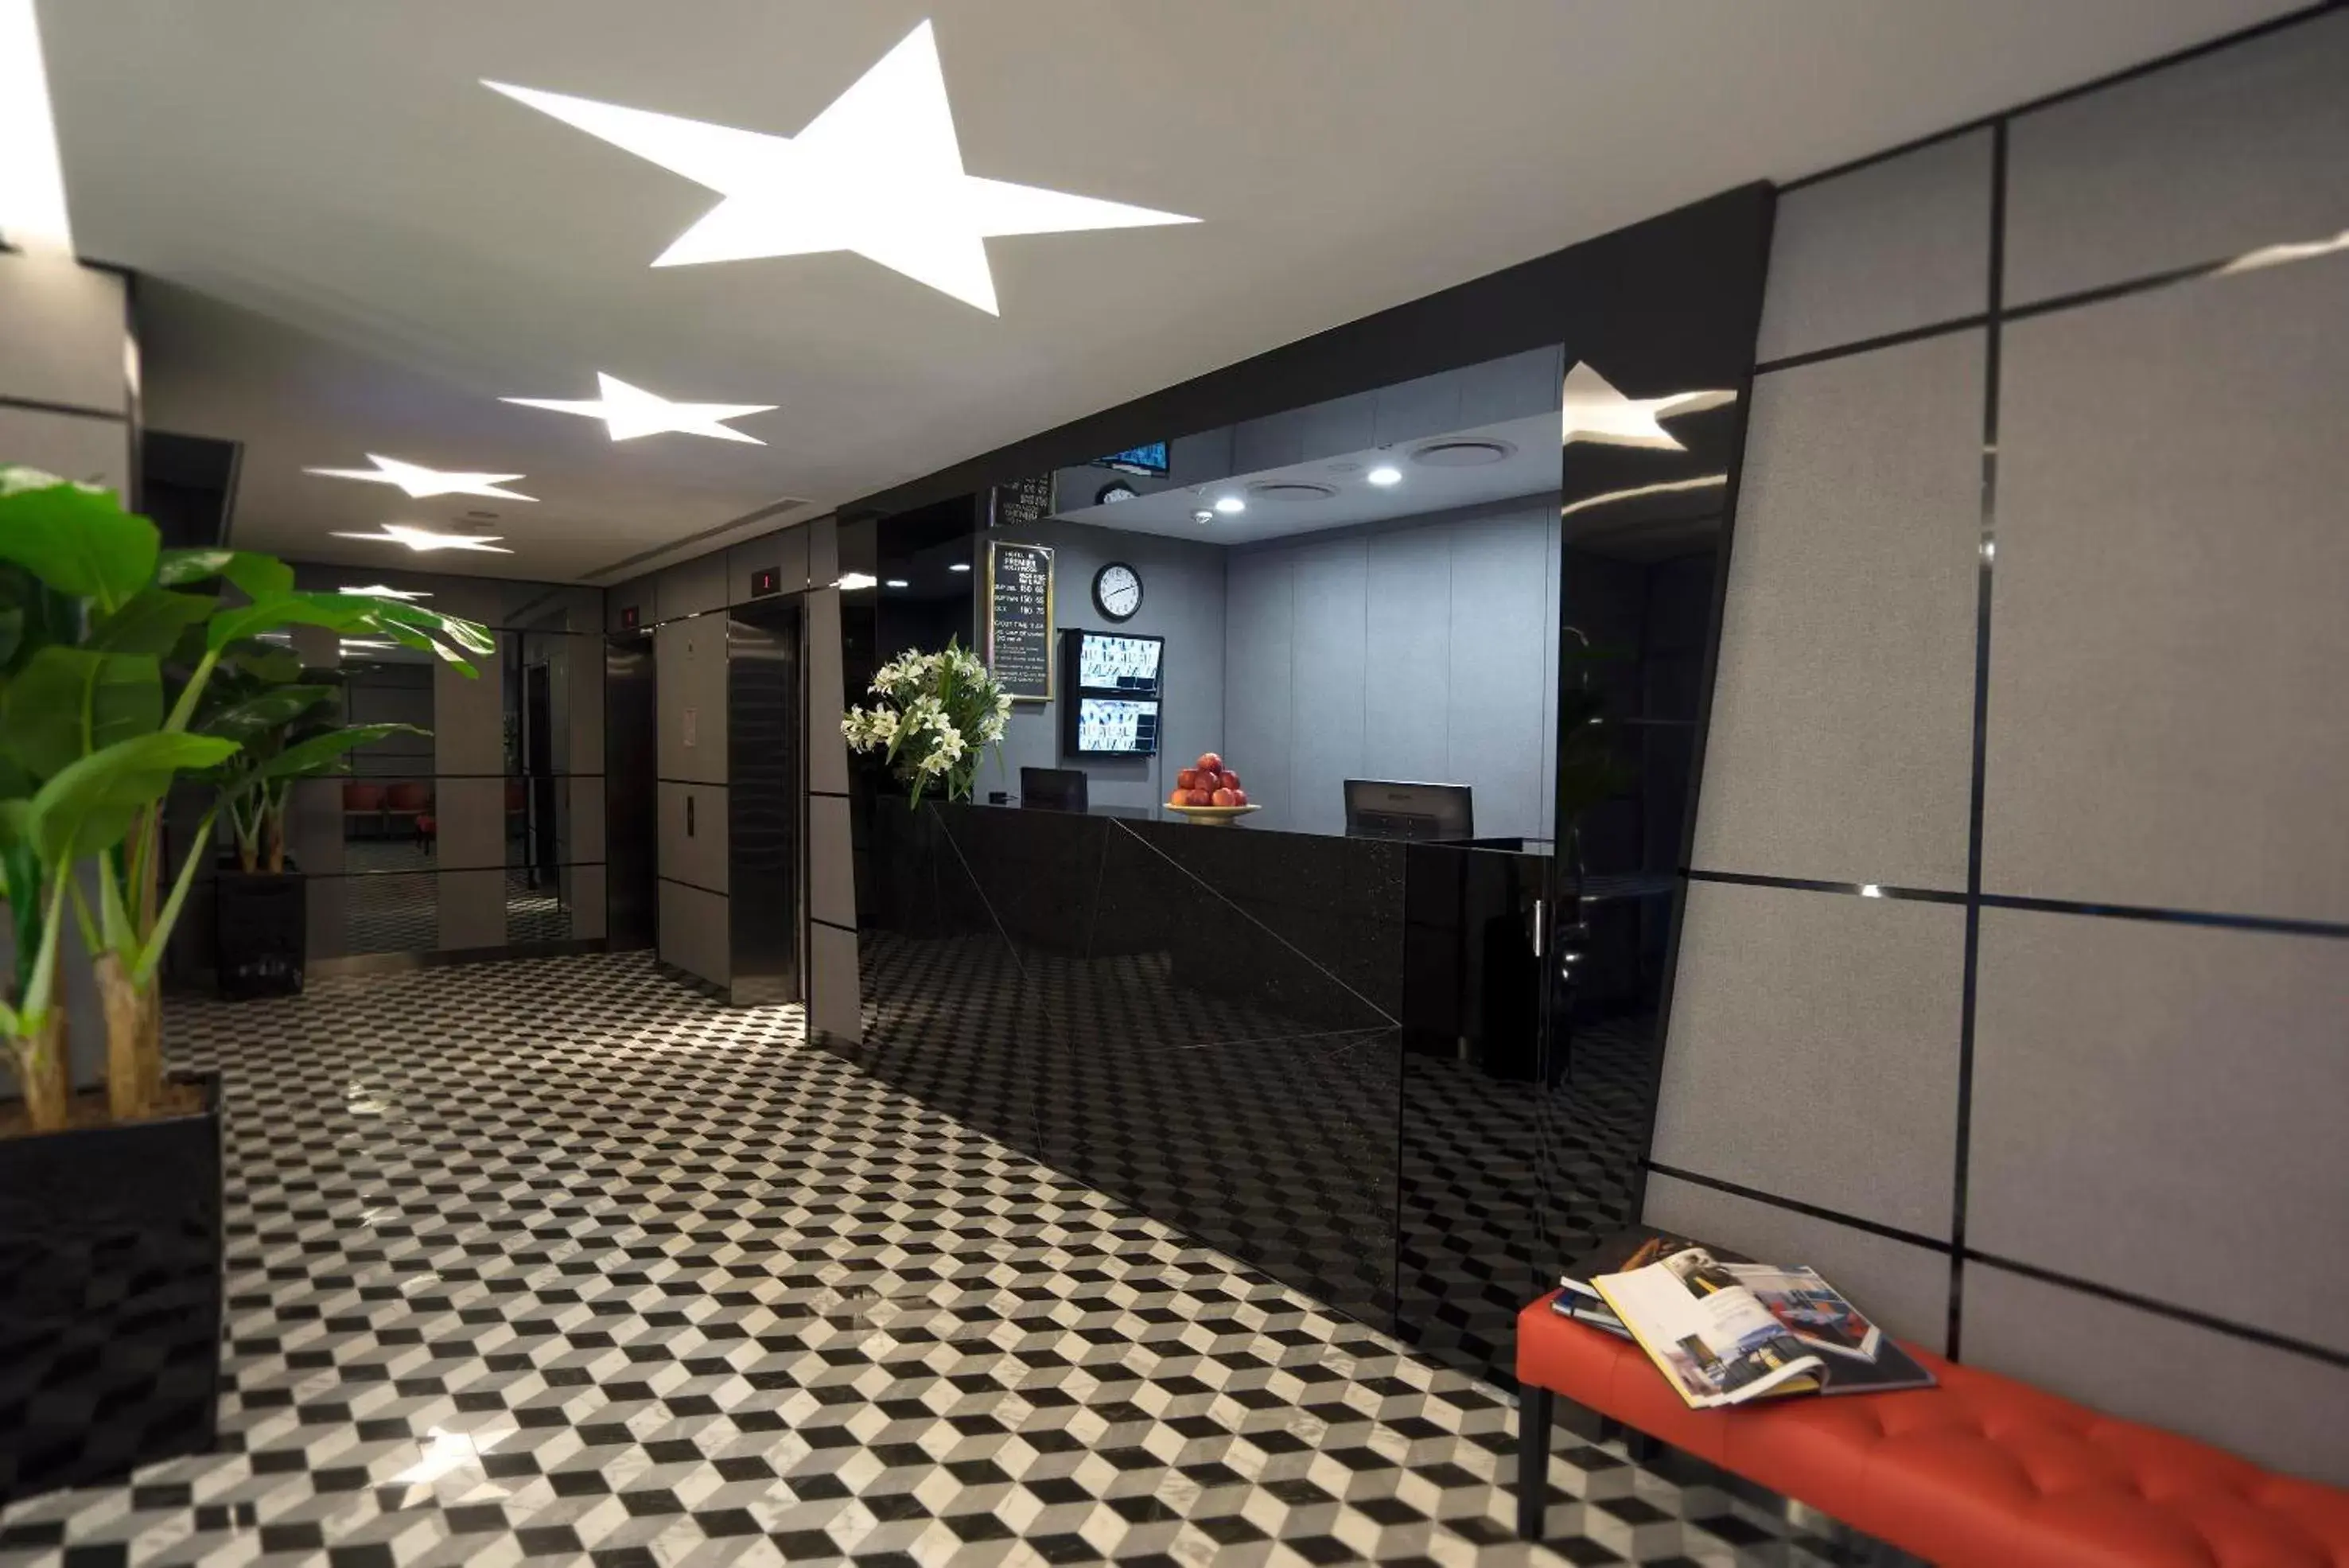 Lobby or reception, Lobby/Reception in Hotel 81 Premier Hollywood